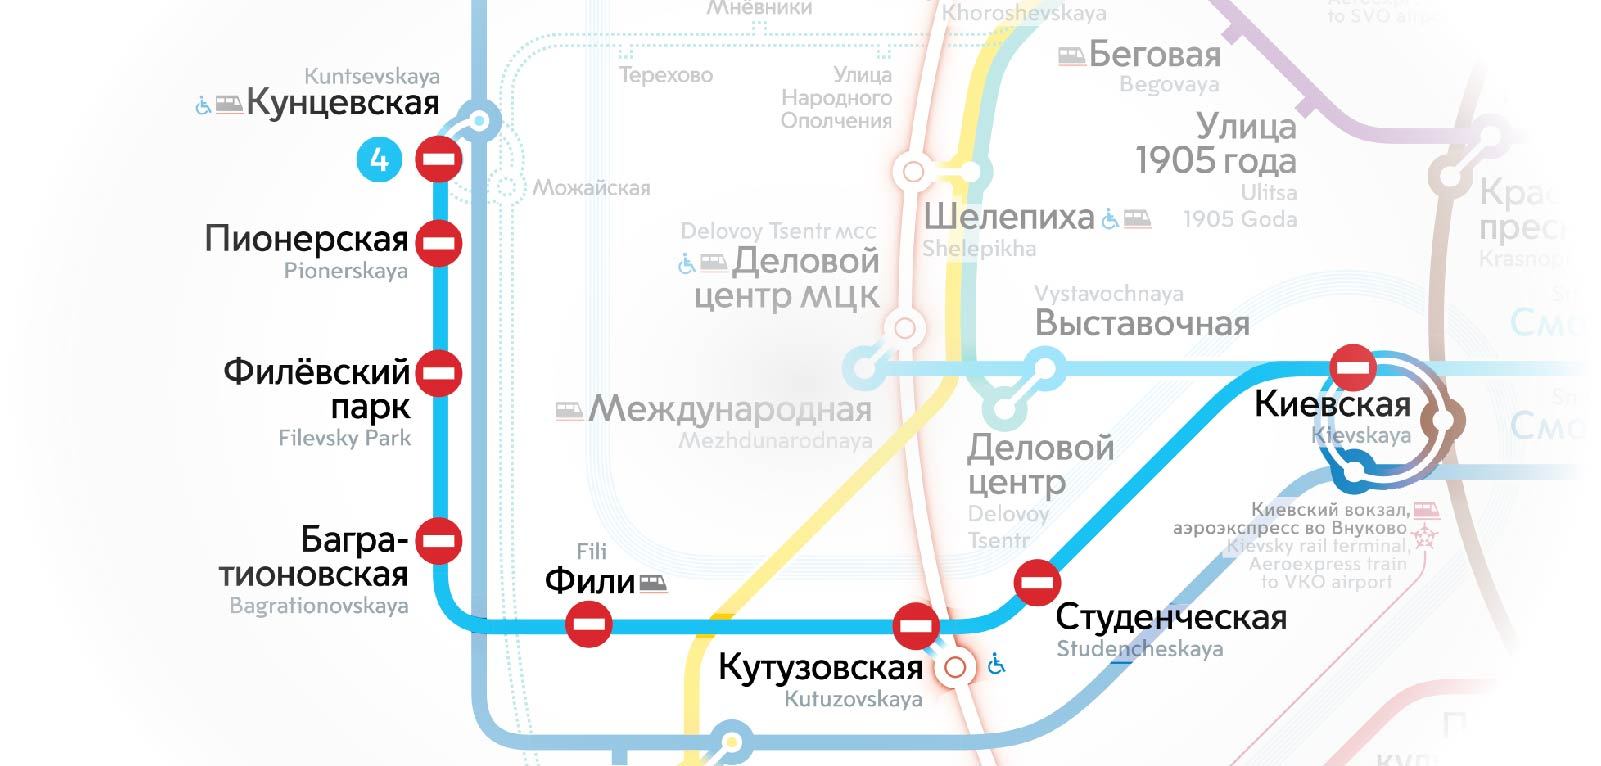 Ремонт на Филевской ветке метро